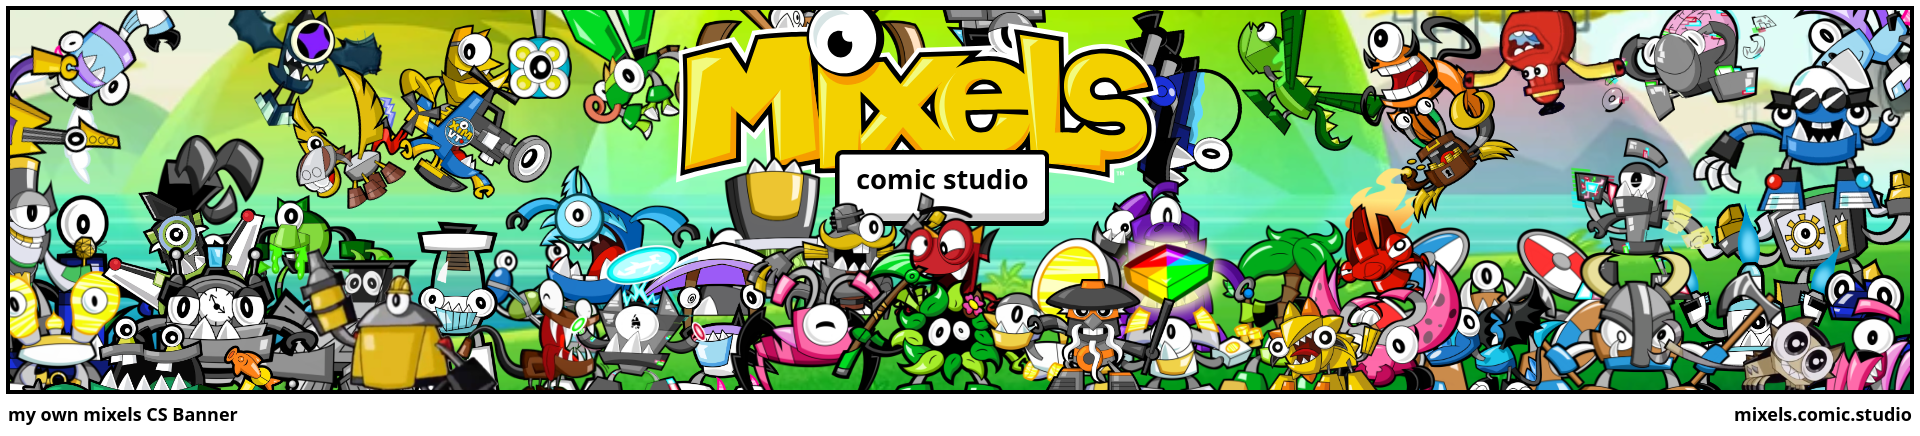 my own mixels CS Banner